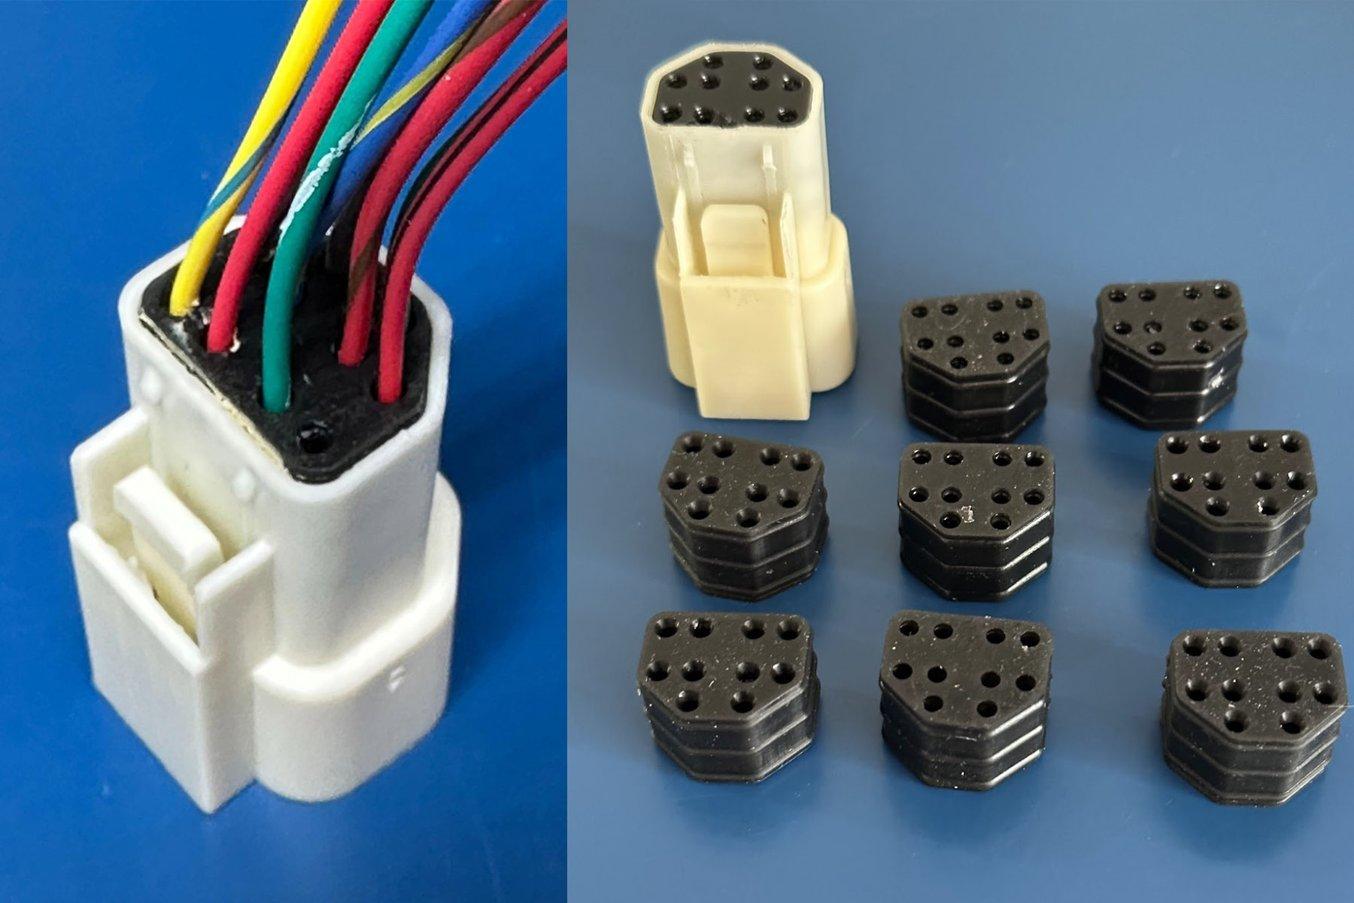 打印的连接器密封件，并与外壳和电子元件组装。